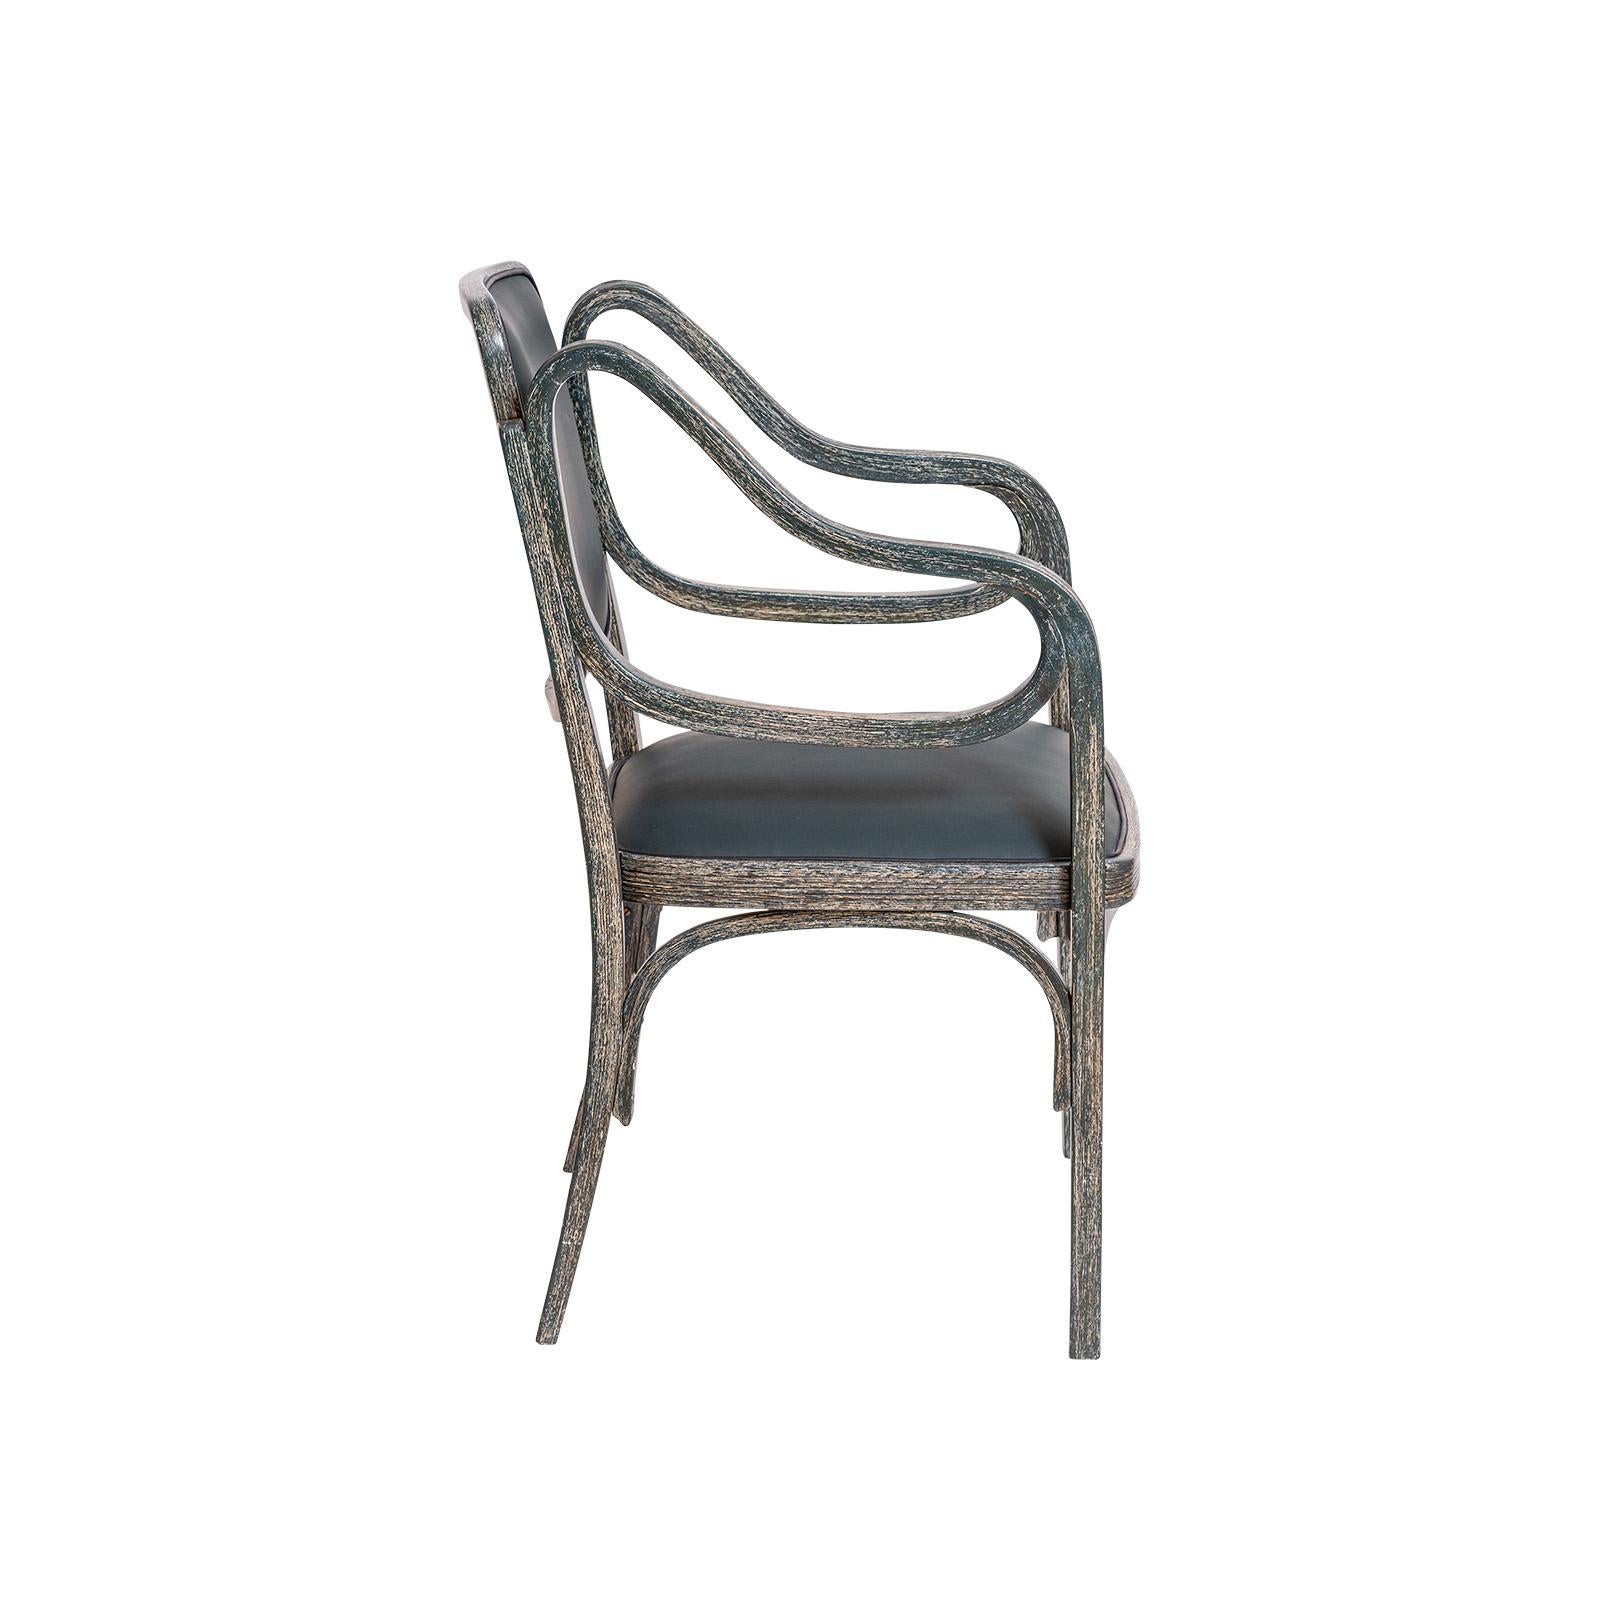 Pionnier et maître du Modernisme, Otto Wagner s'est emparé de la technique alors assez nouvelle du cintrage du bois pour concevoir ses meubles.
Le design de ce fauteuil date de 1901. Cette chaise a été fabriquée à Mundus vers 1906. Le design des